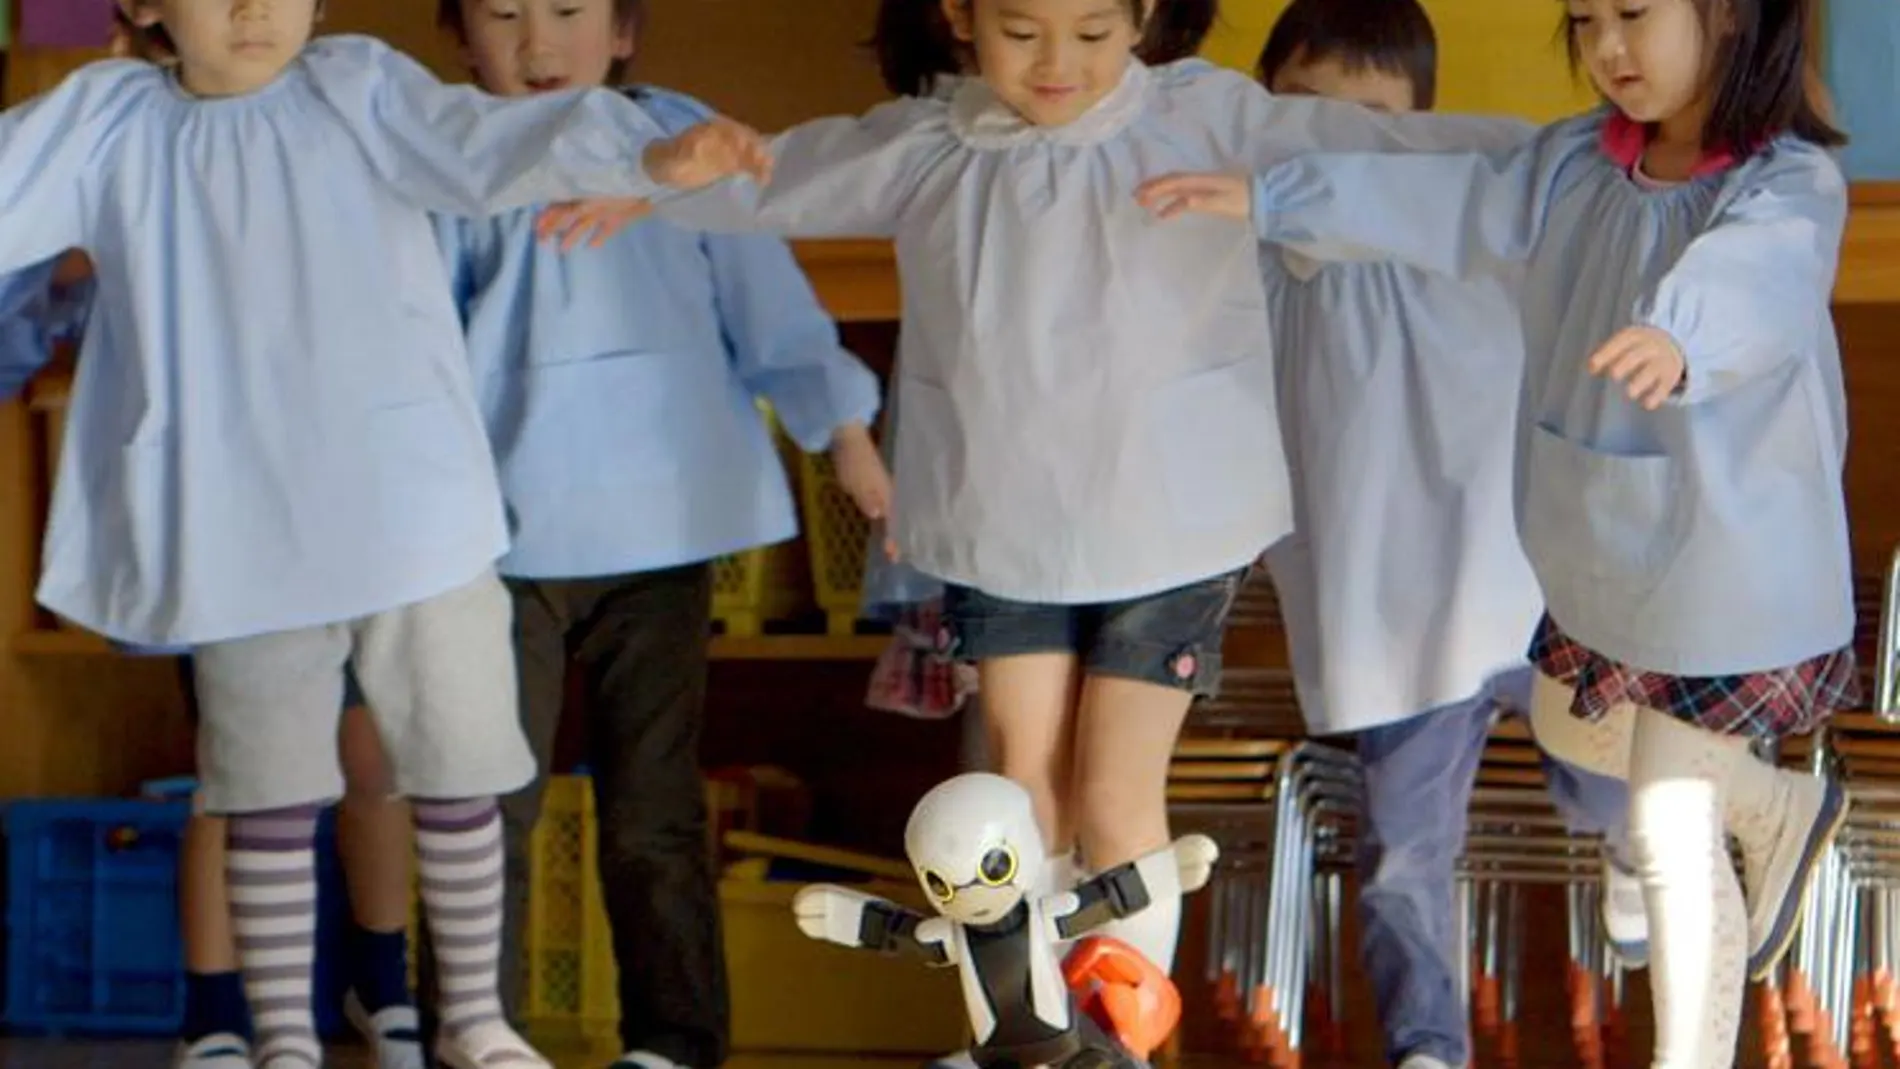 El robot Kirobo, diseñado para dar conversación a niños y astronautas